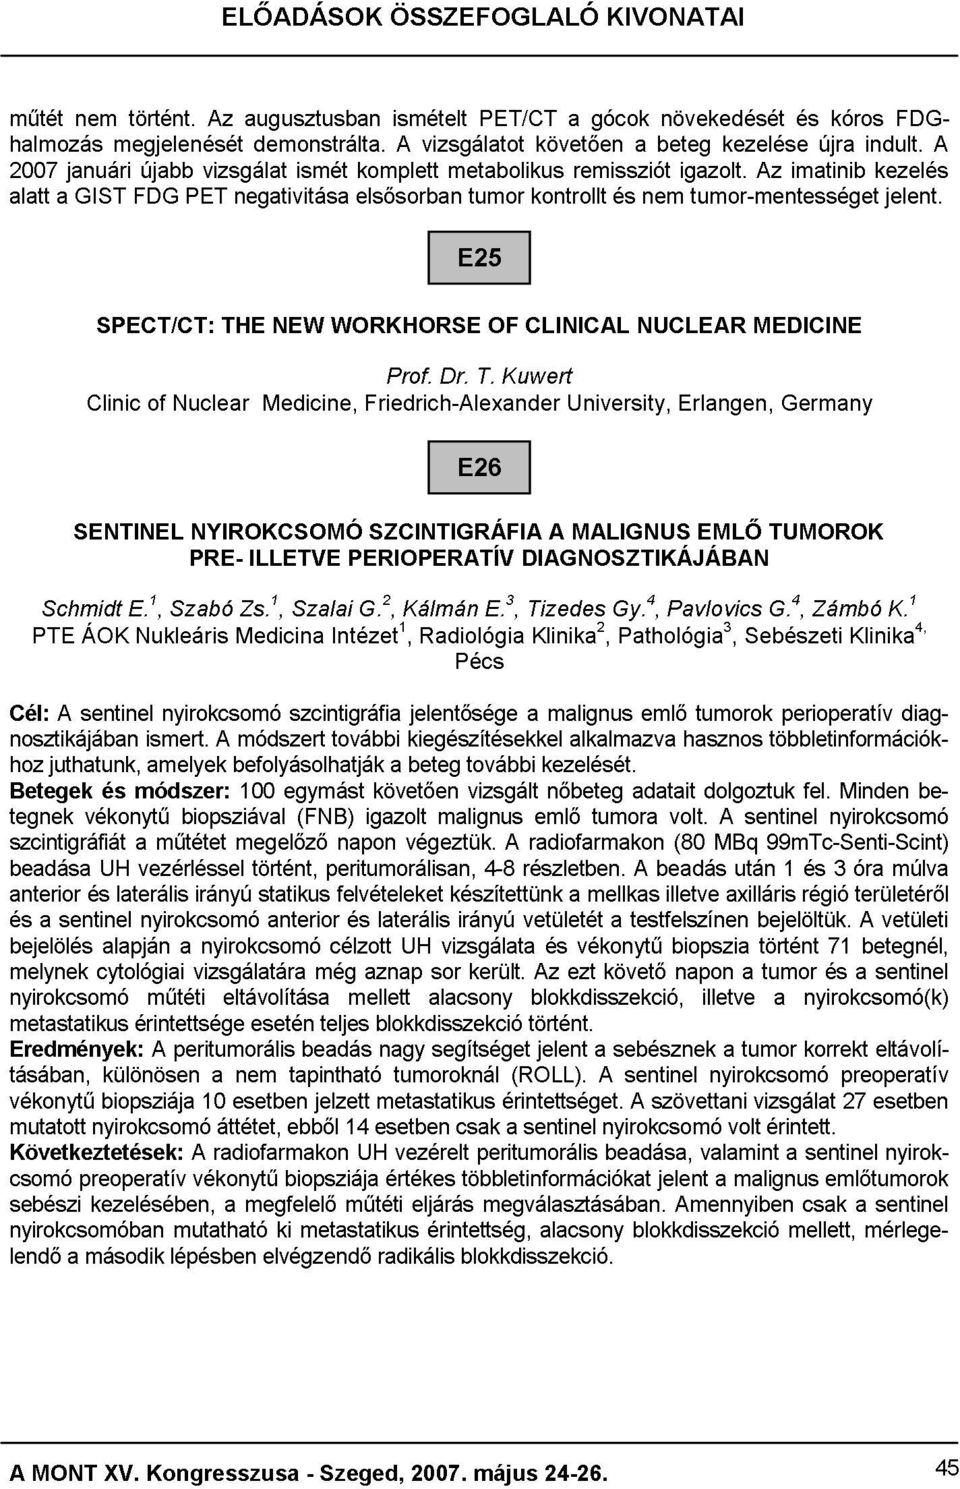 Medicine, NEW ismét WORKHORSE elsősorban komplett Friedrich-Alexander Prof. A vizsgálatot Dr. metabolikus E25 tumor T.